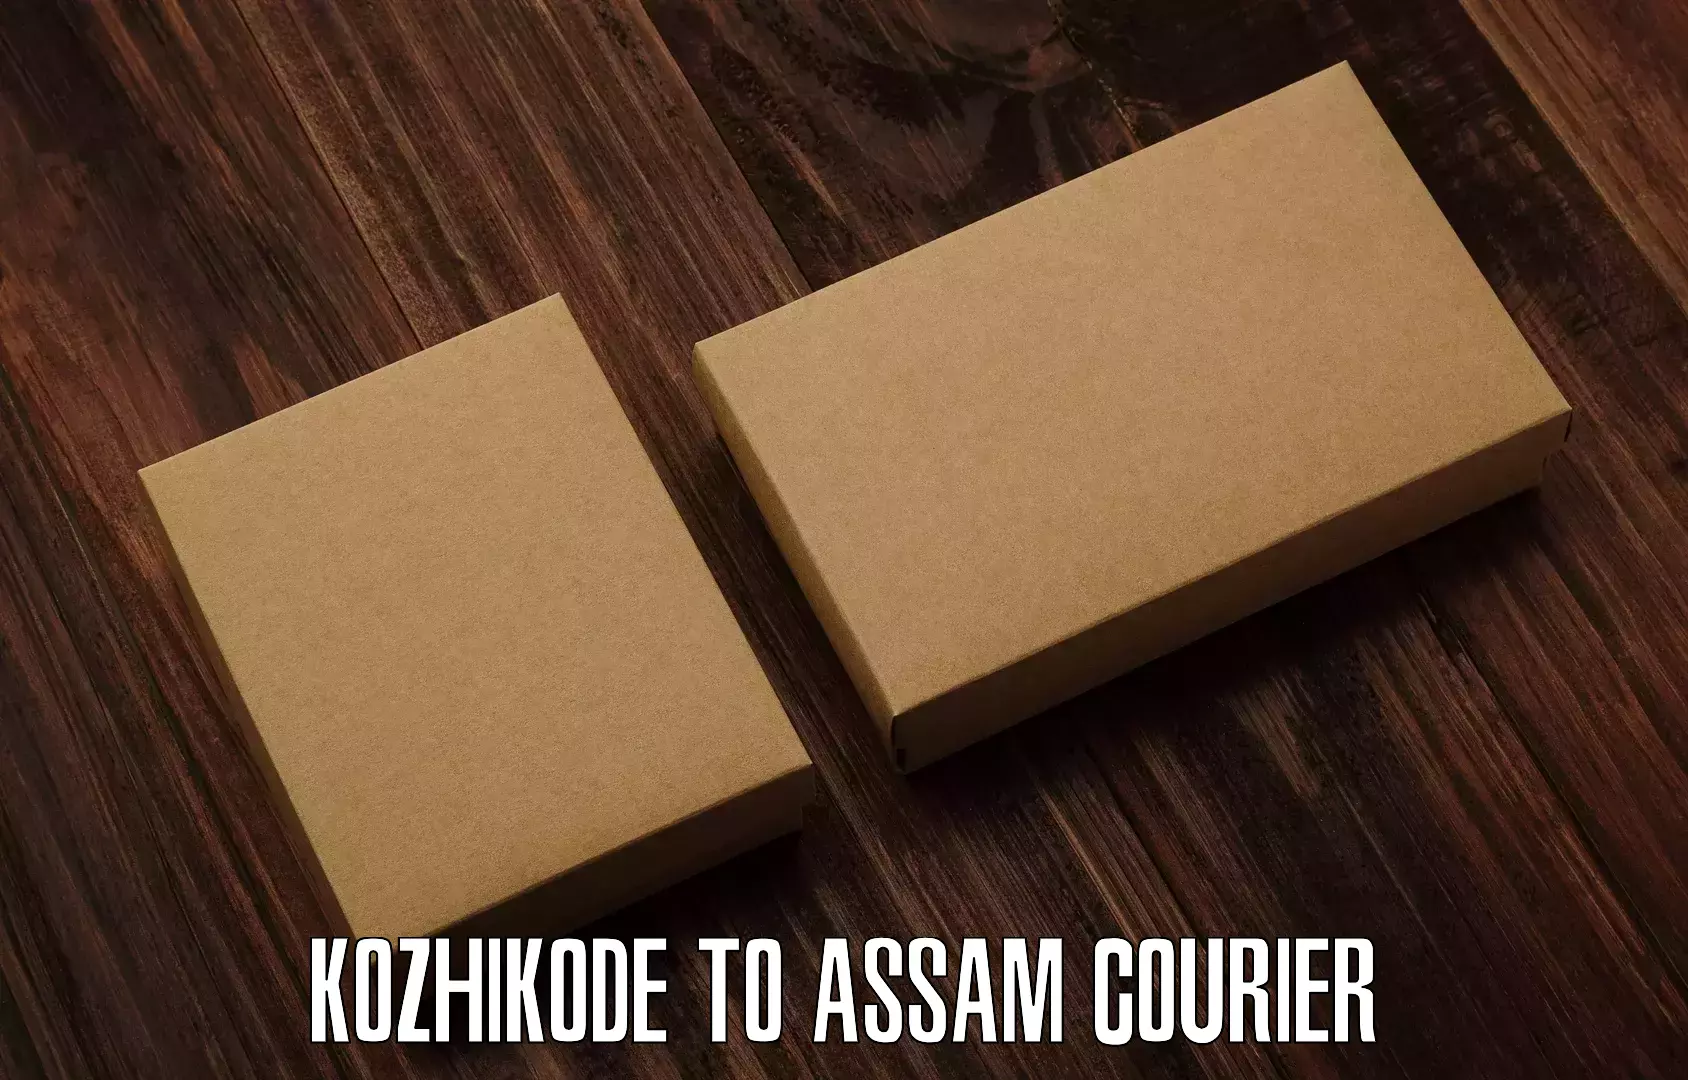 Lightweight parcel options Kozhikode to Assam